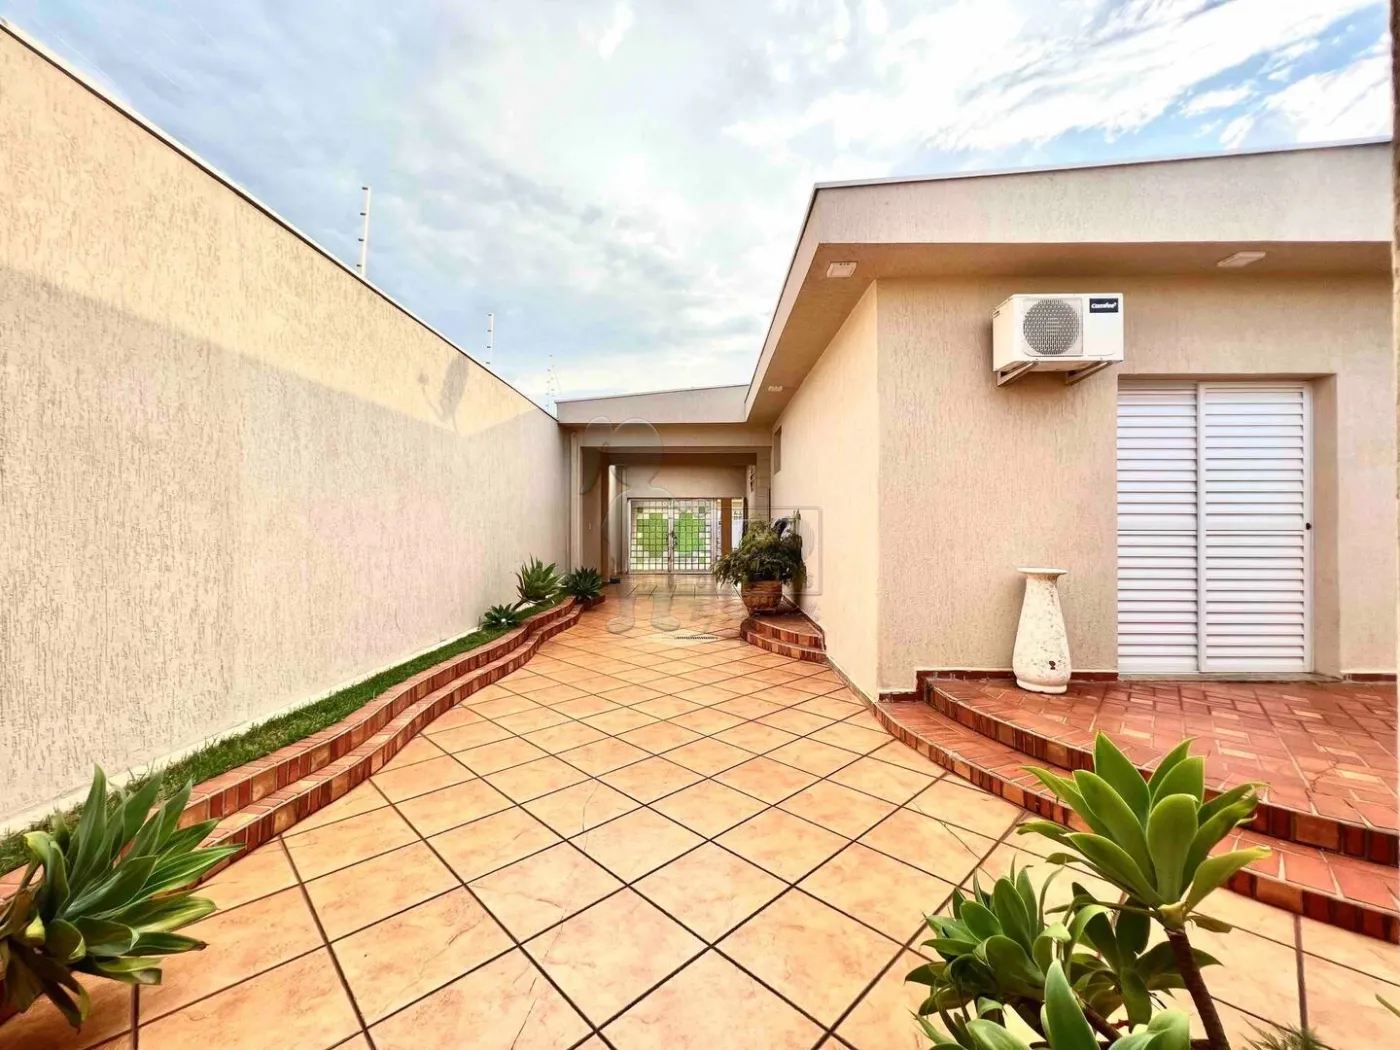 Comprar Casa / Padrão em Ribeirão Preto R$ 960.000,00 - Foto 9